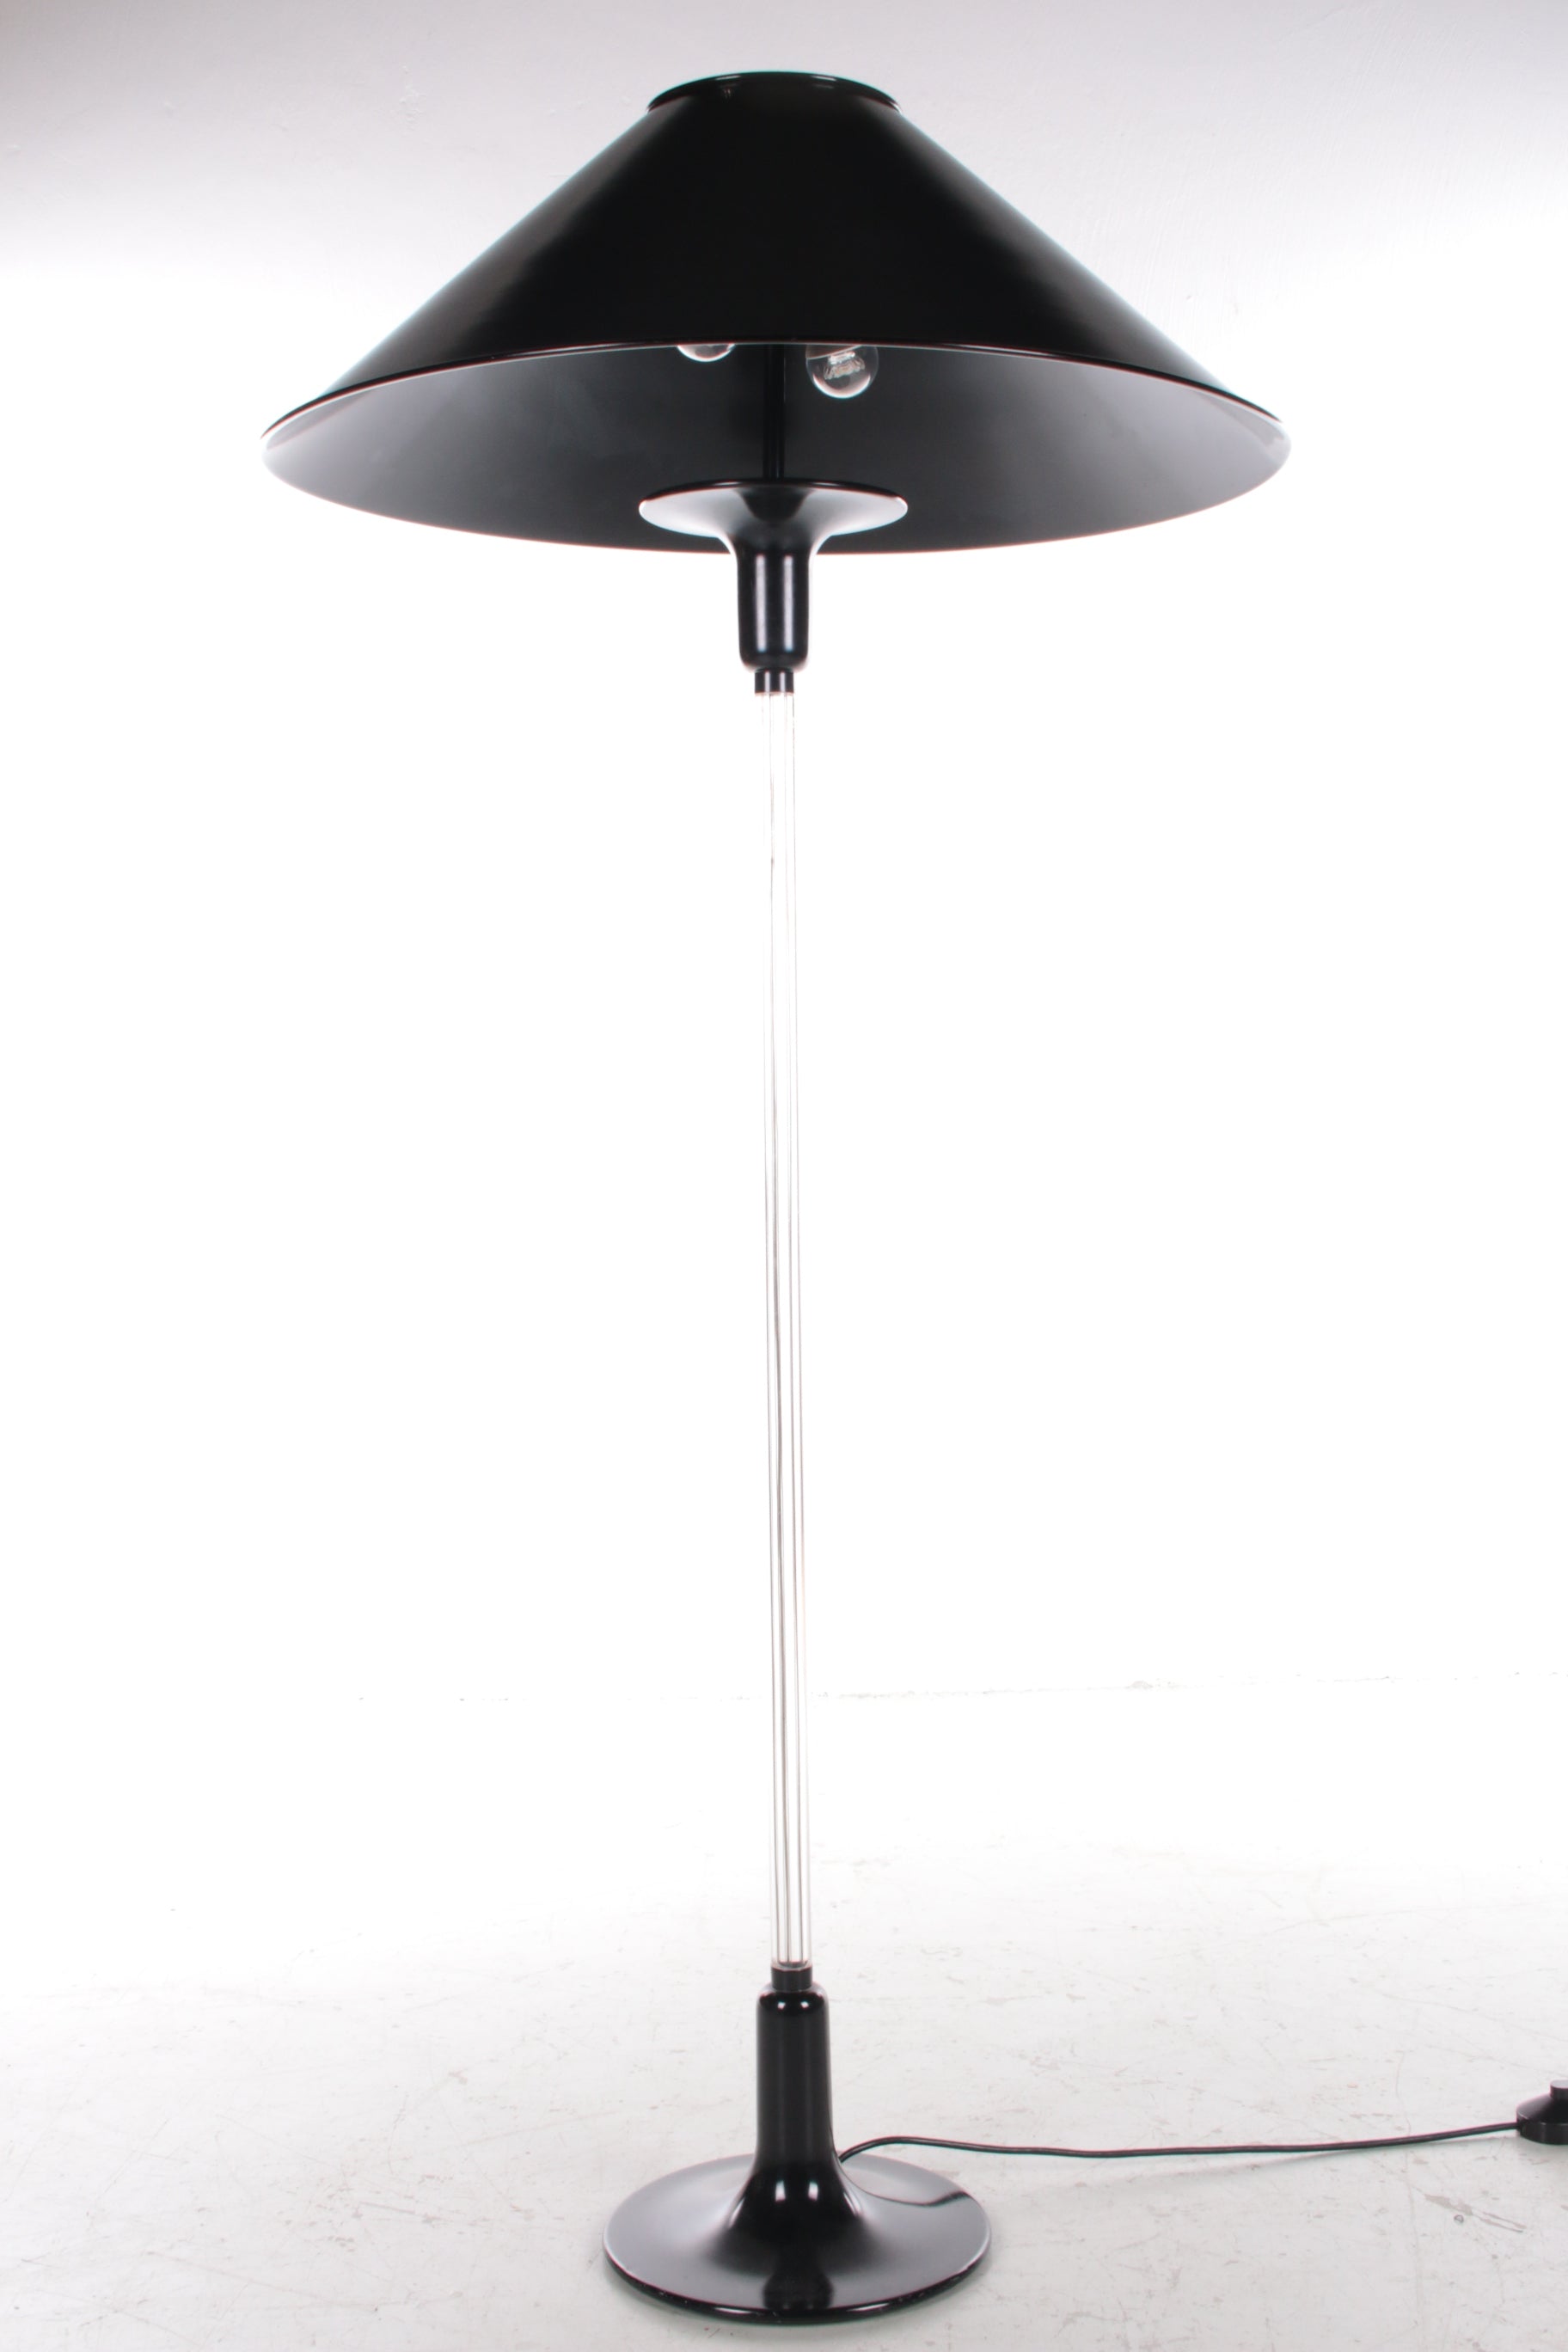 Plexola Vloer lamp van Ingo Maurer gemaakt door Design M,1980s.